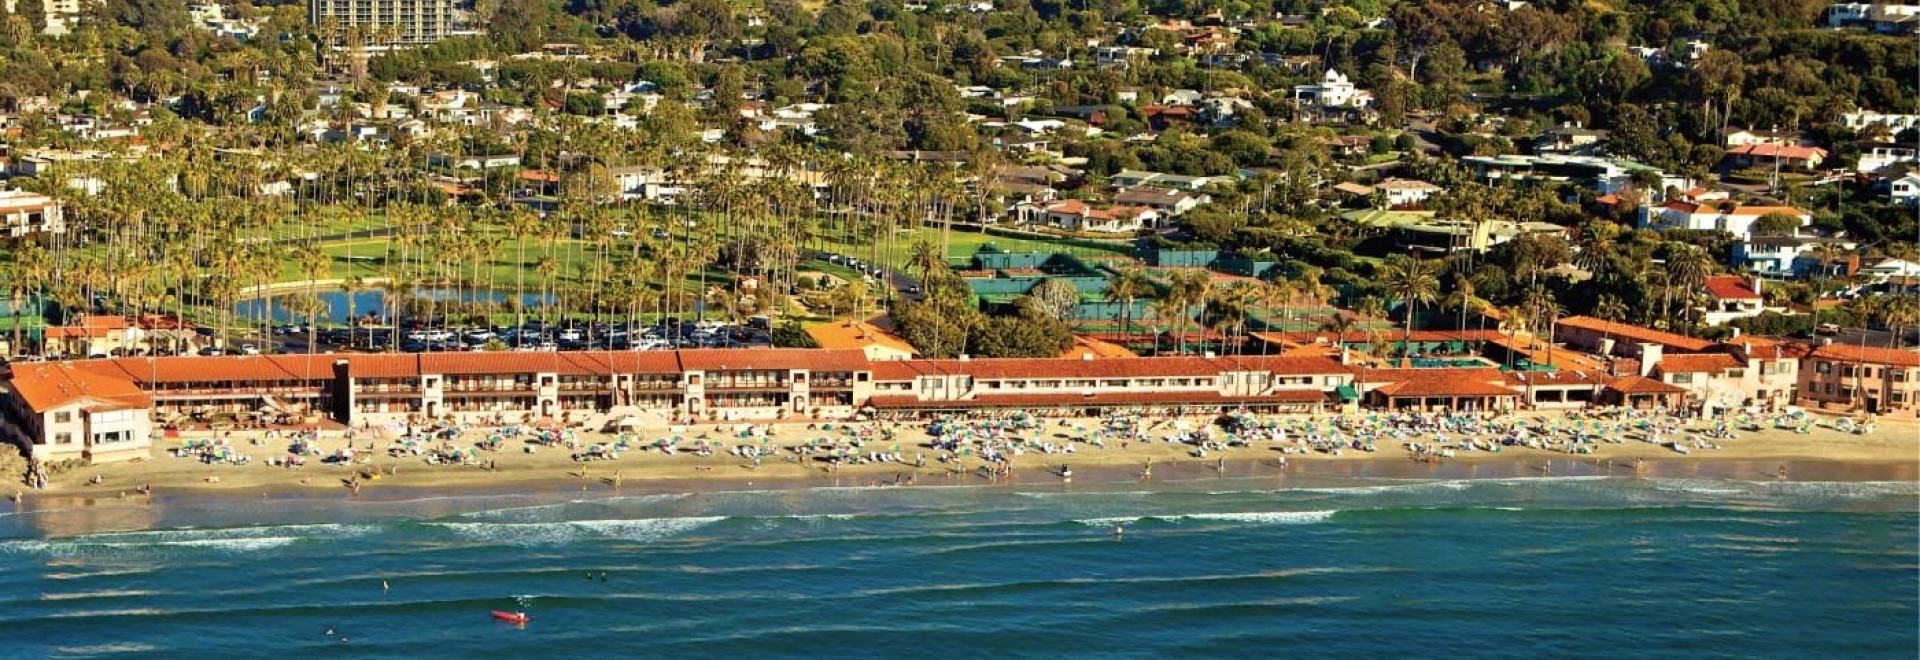 La Jolla Beach & Tennis Club, California - Book. Travel. Play.